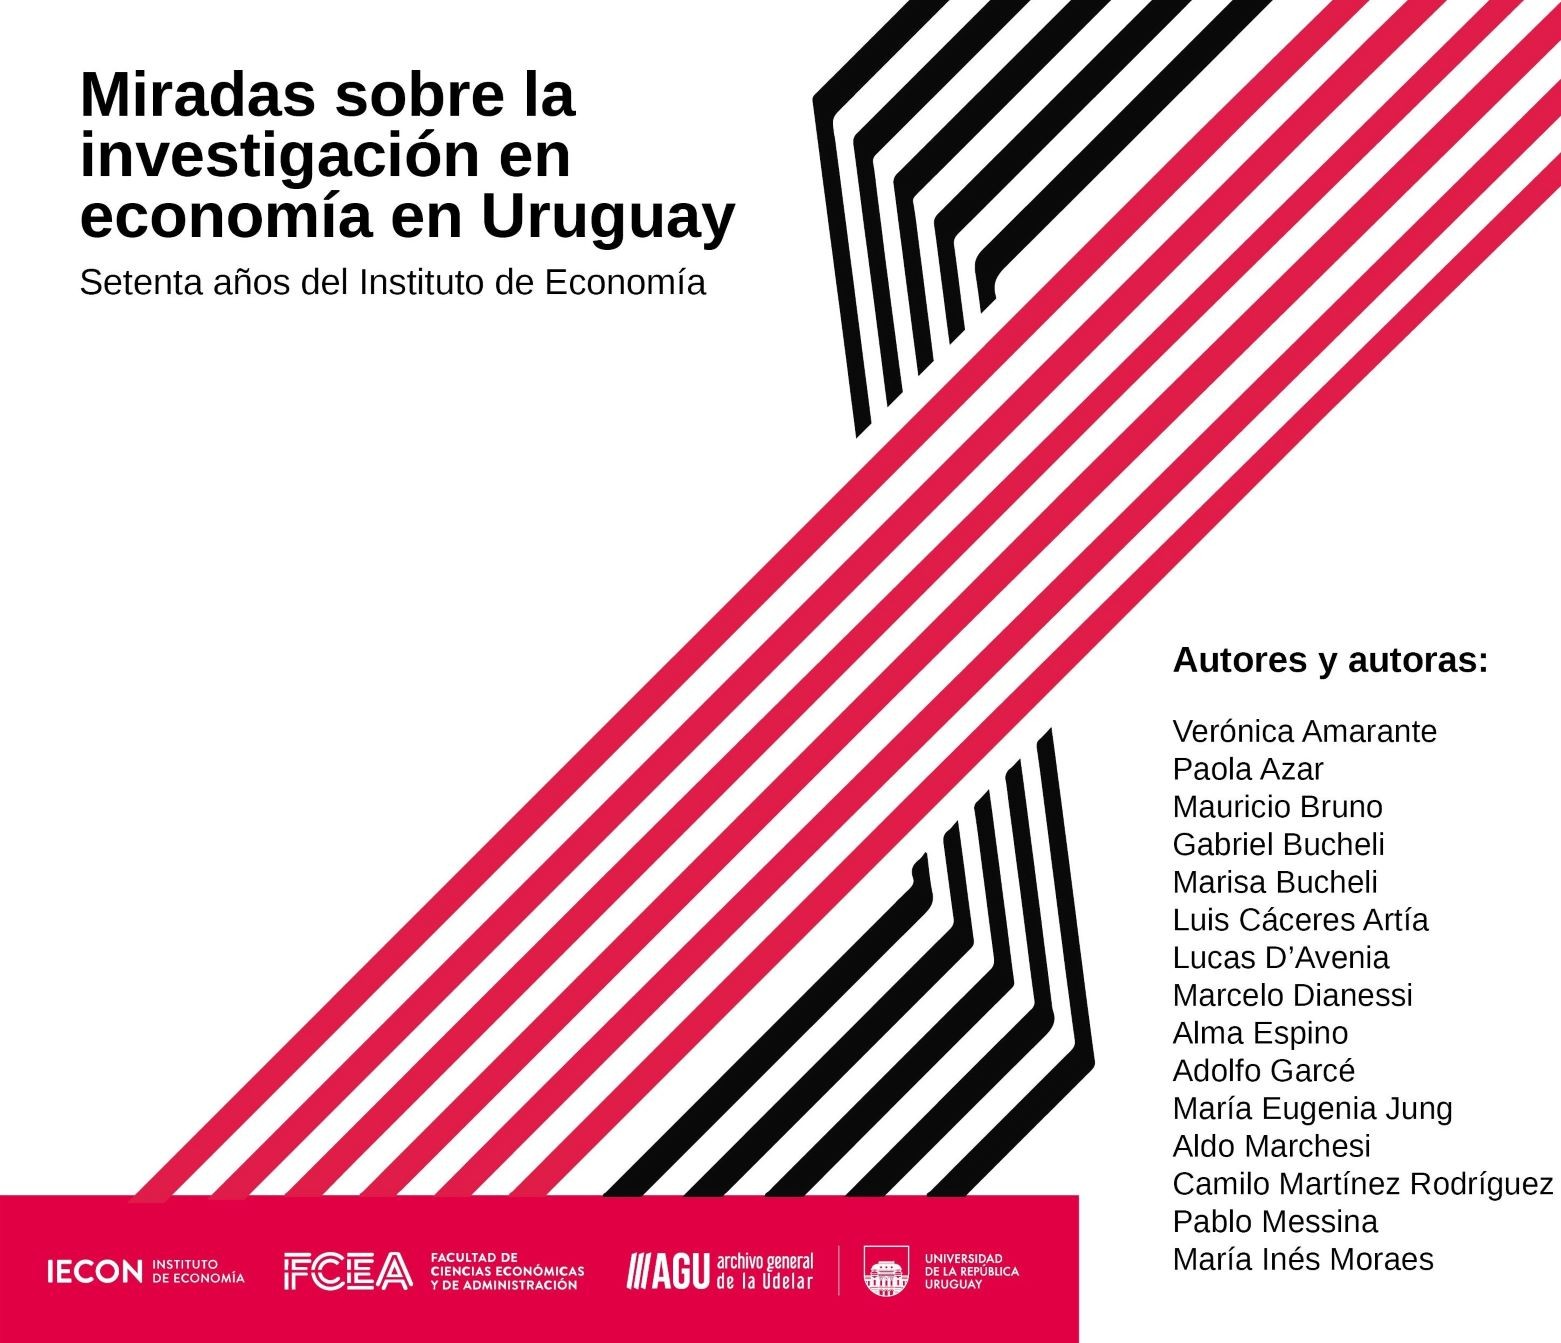 Miradas sobre la investigación en economía en Uruguay